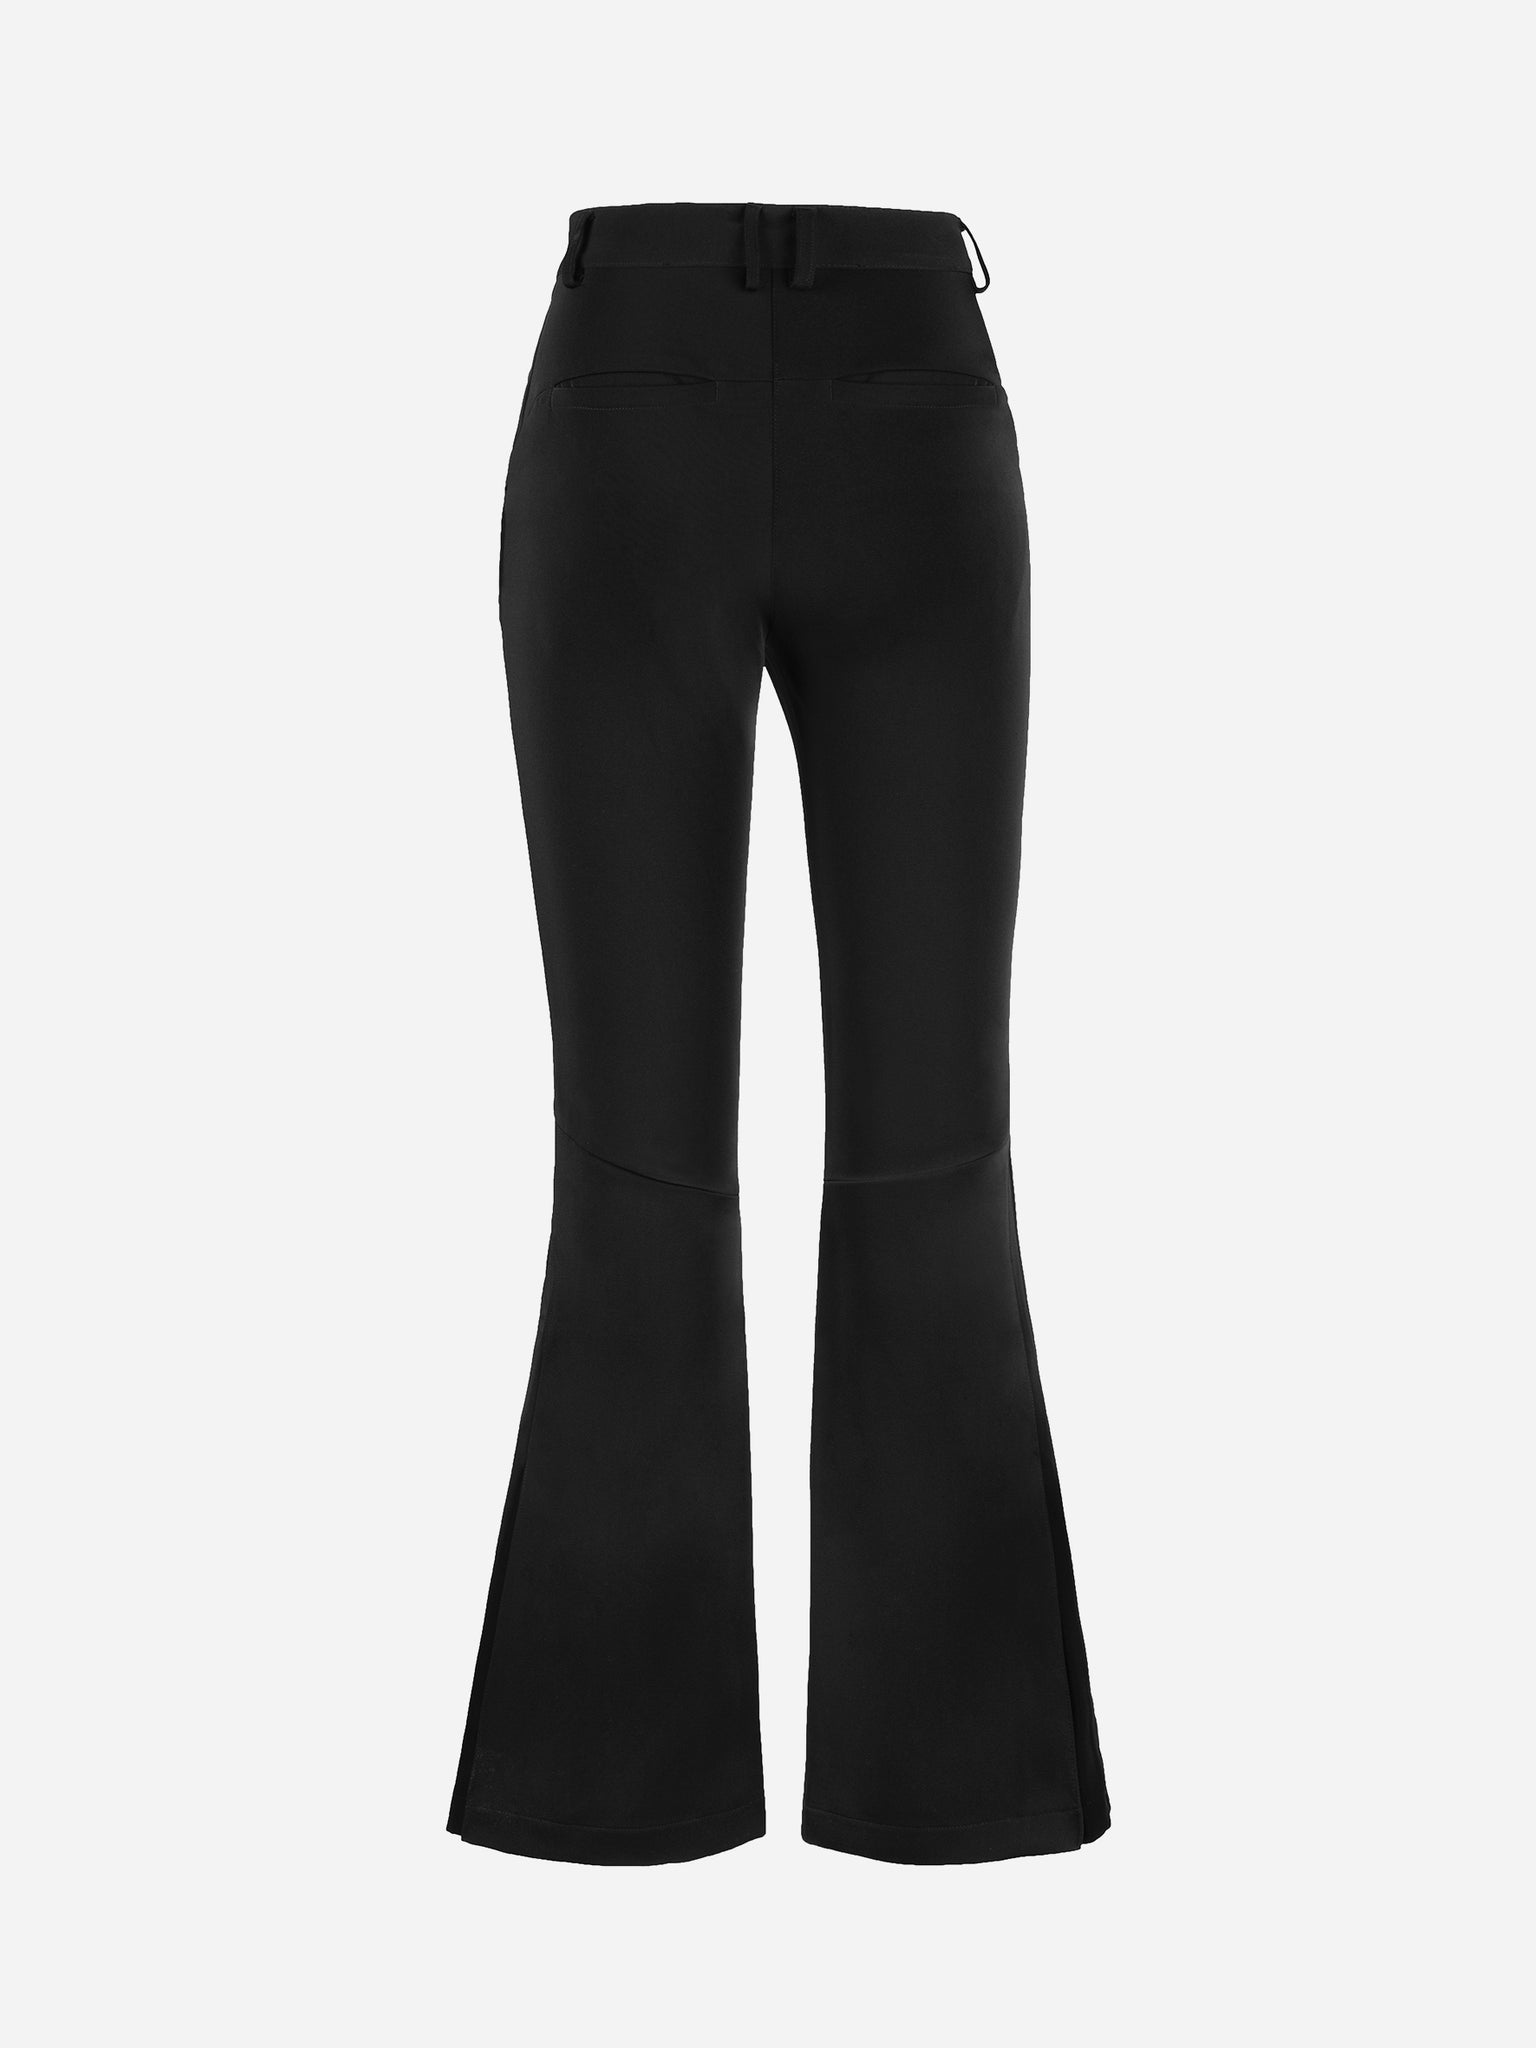 Ladies Elastic Waist Trousers with side zips – Adaptawear